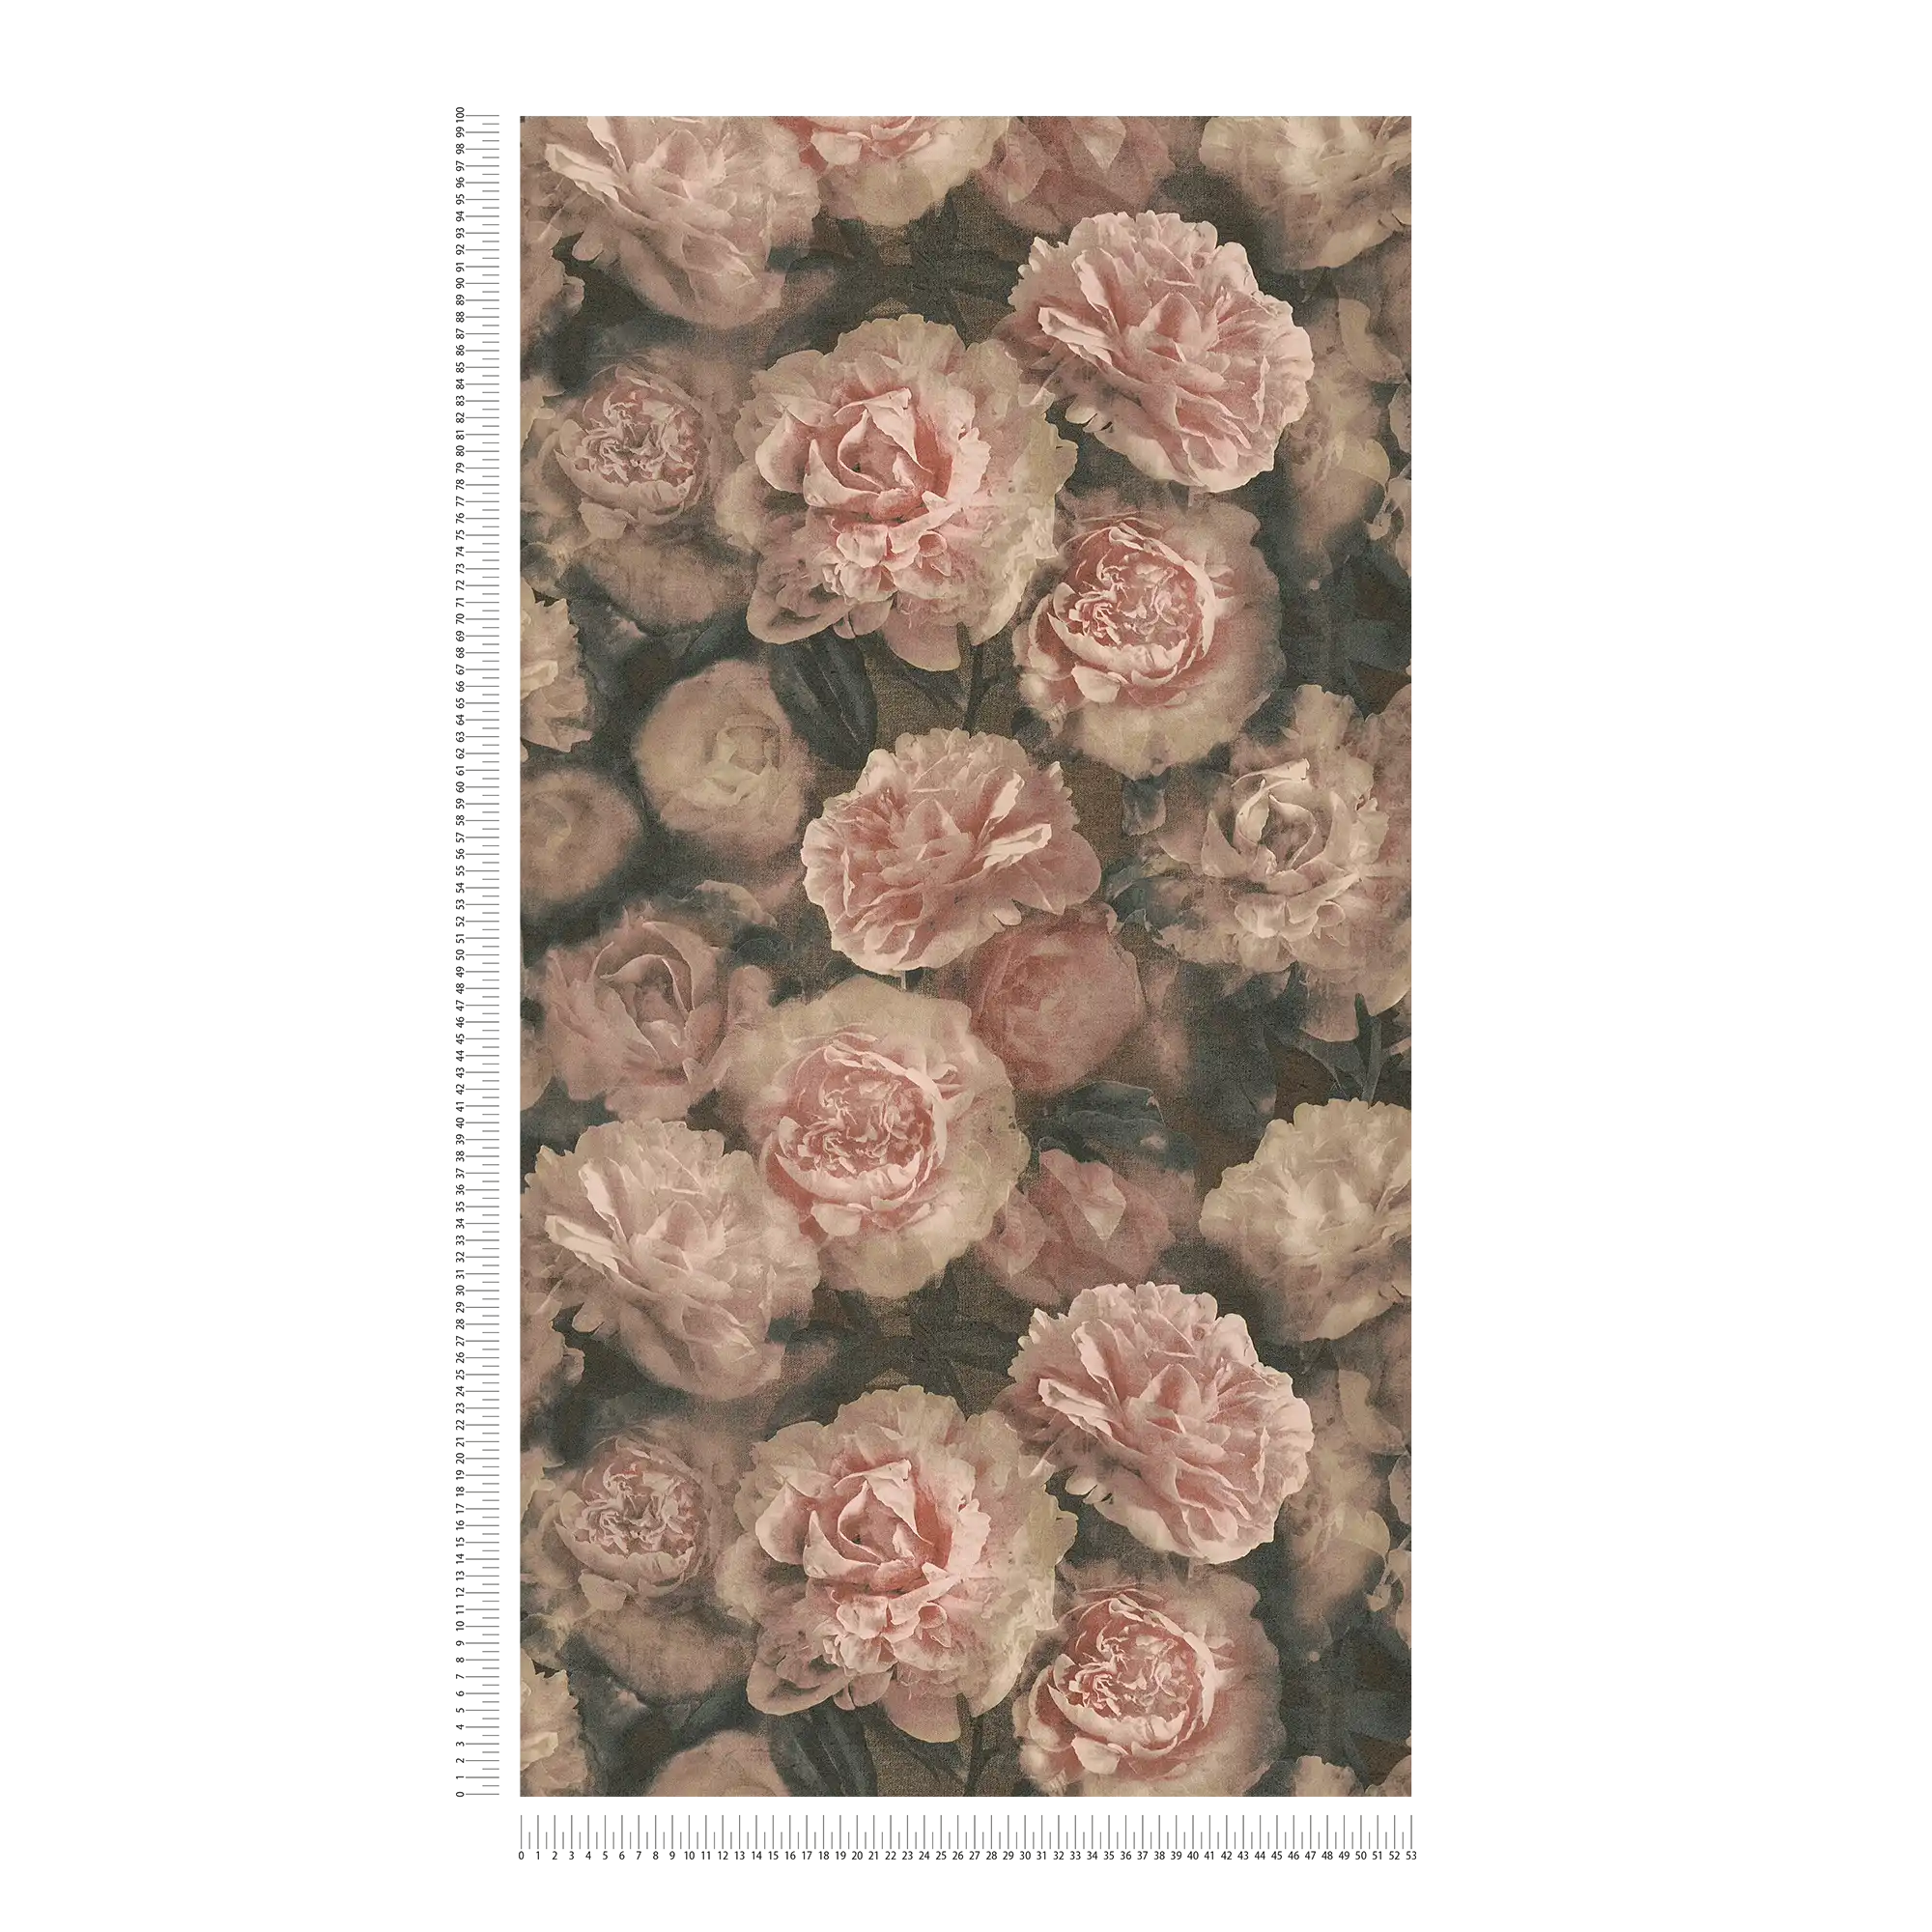             Carta da parati floreale con rose dall'aspetto vintage - rosa, rosso, nero
        